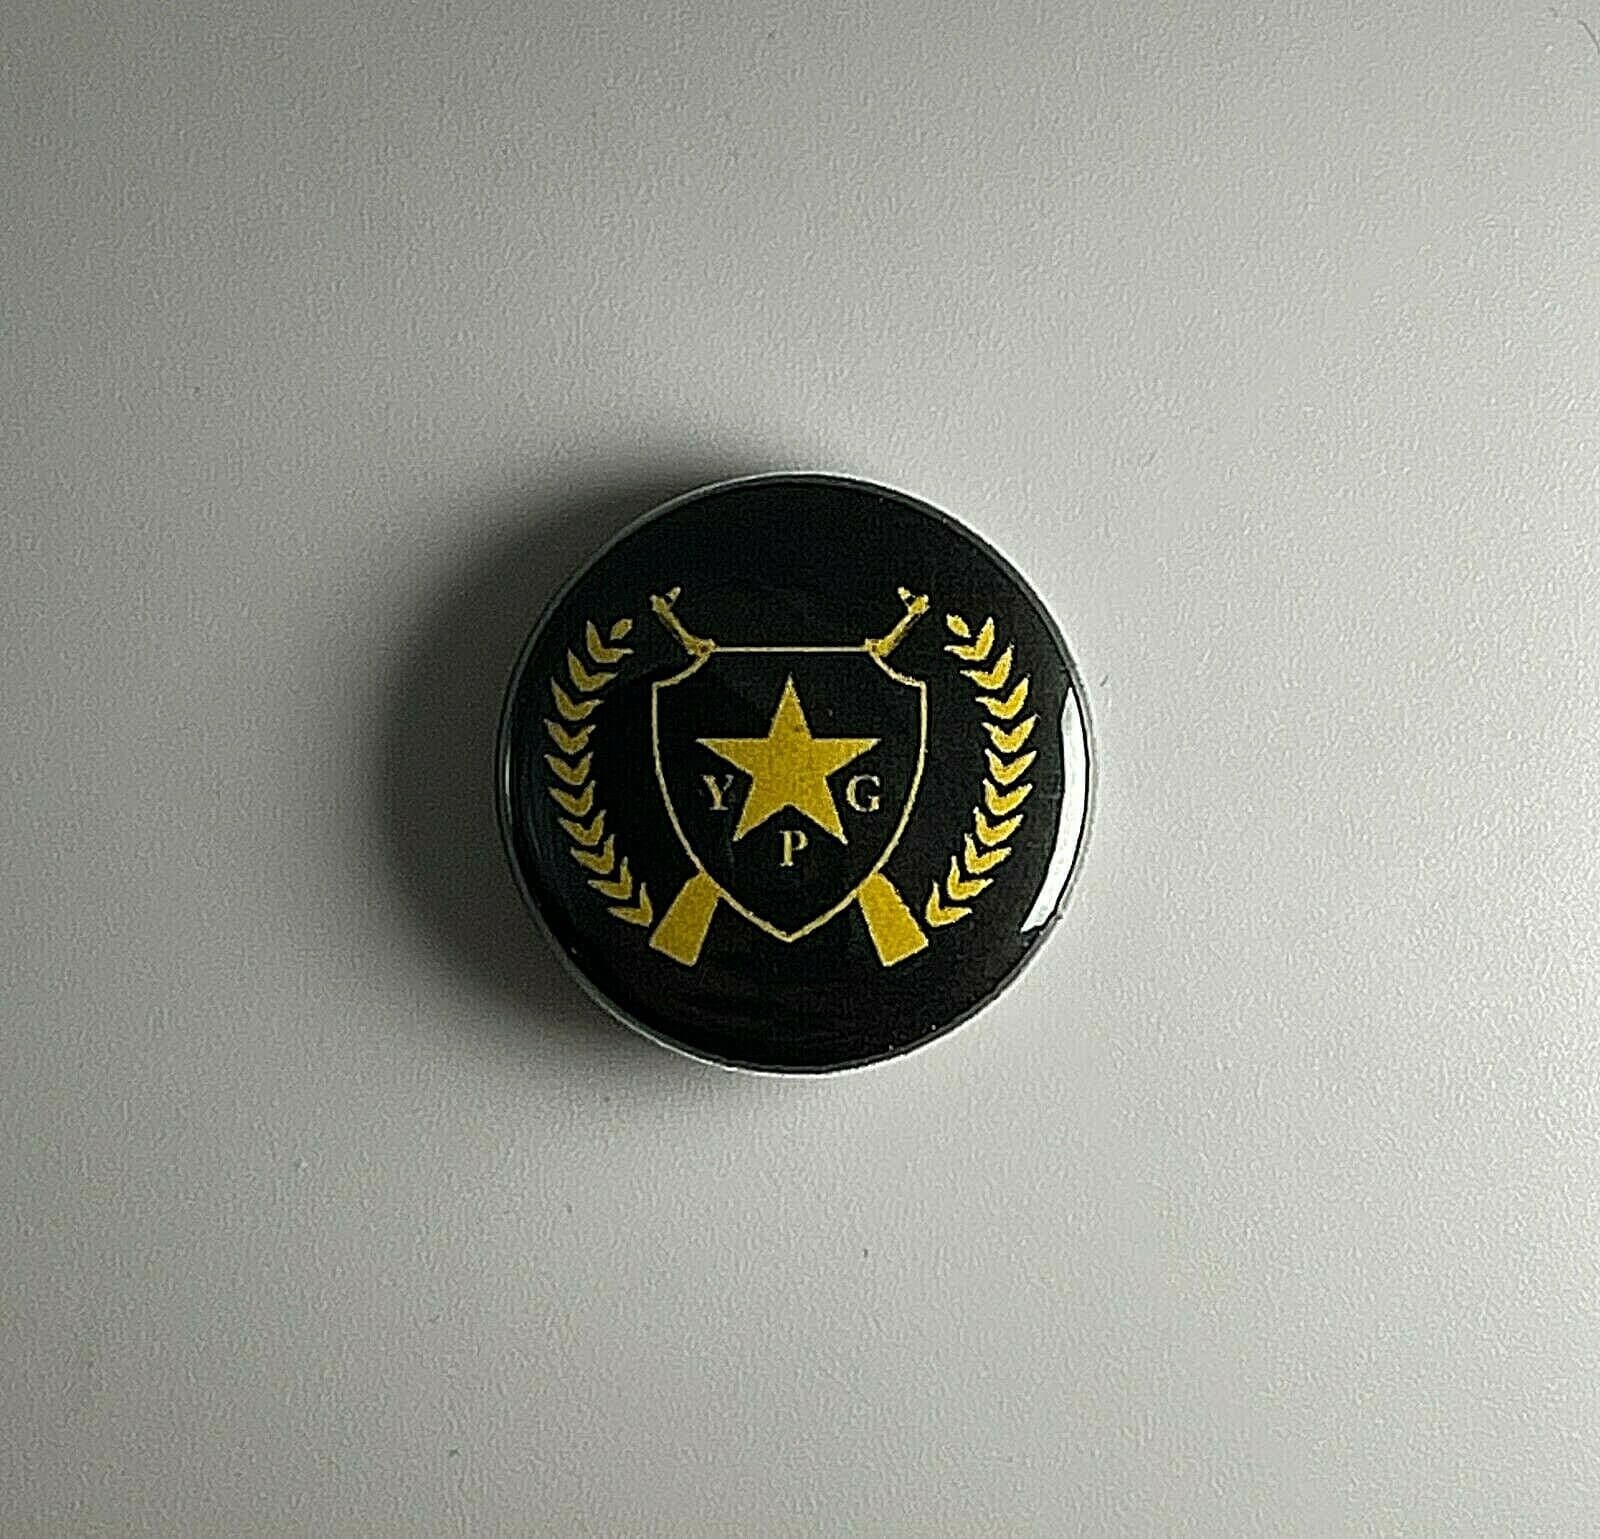 Ypg Guns Flagge Rojava Volksschutzeinheit Ypj 2, 5 cm Button Y006B Badge Pin von Heavylowmerchandise